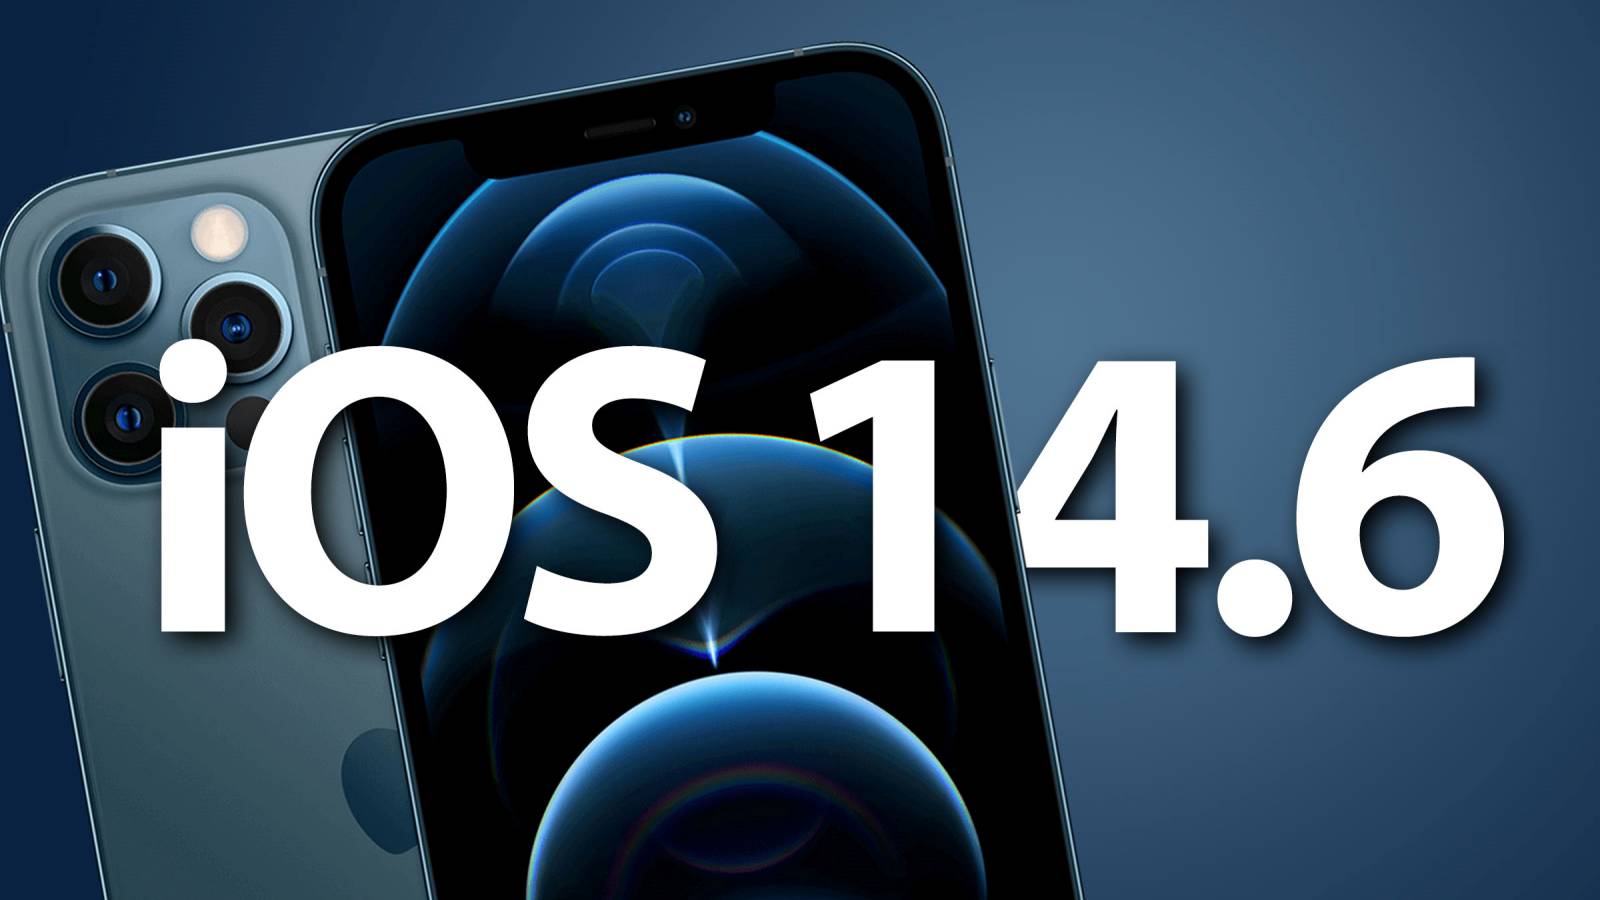 È stato rilasciato iOS 14.6, Elenco Novità per iPhone e iPad